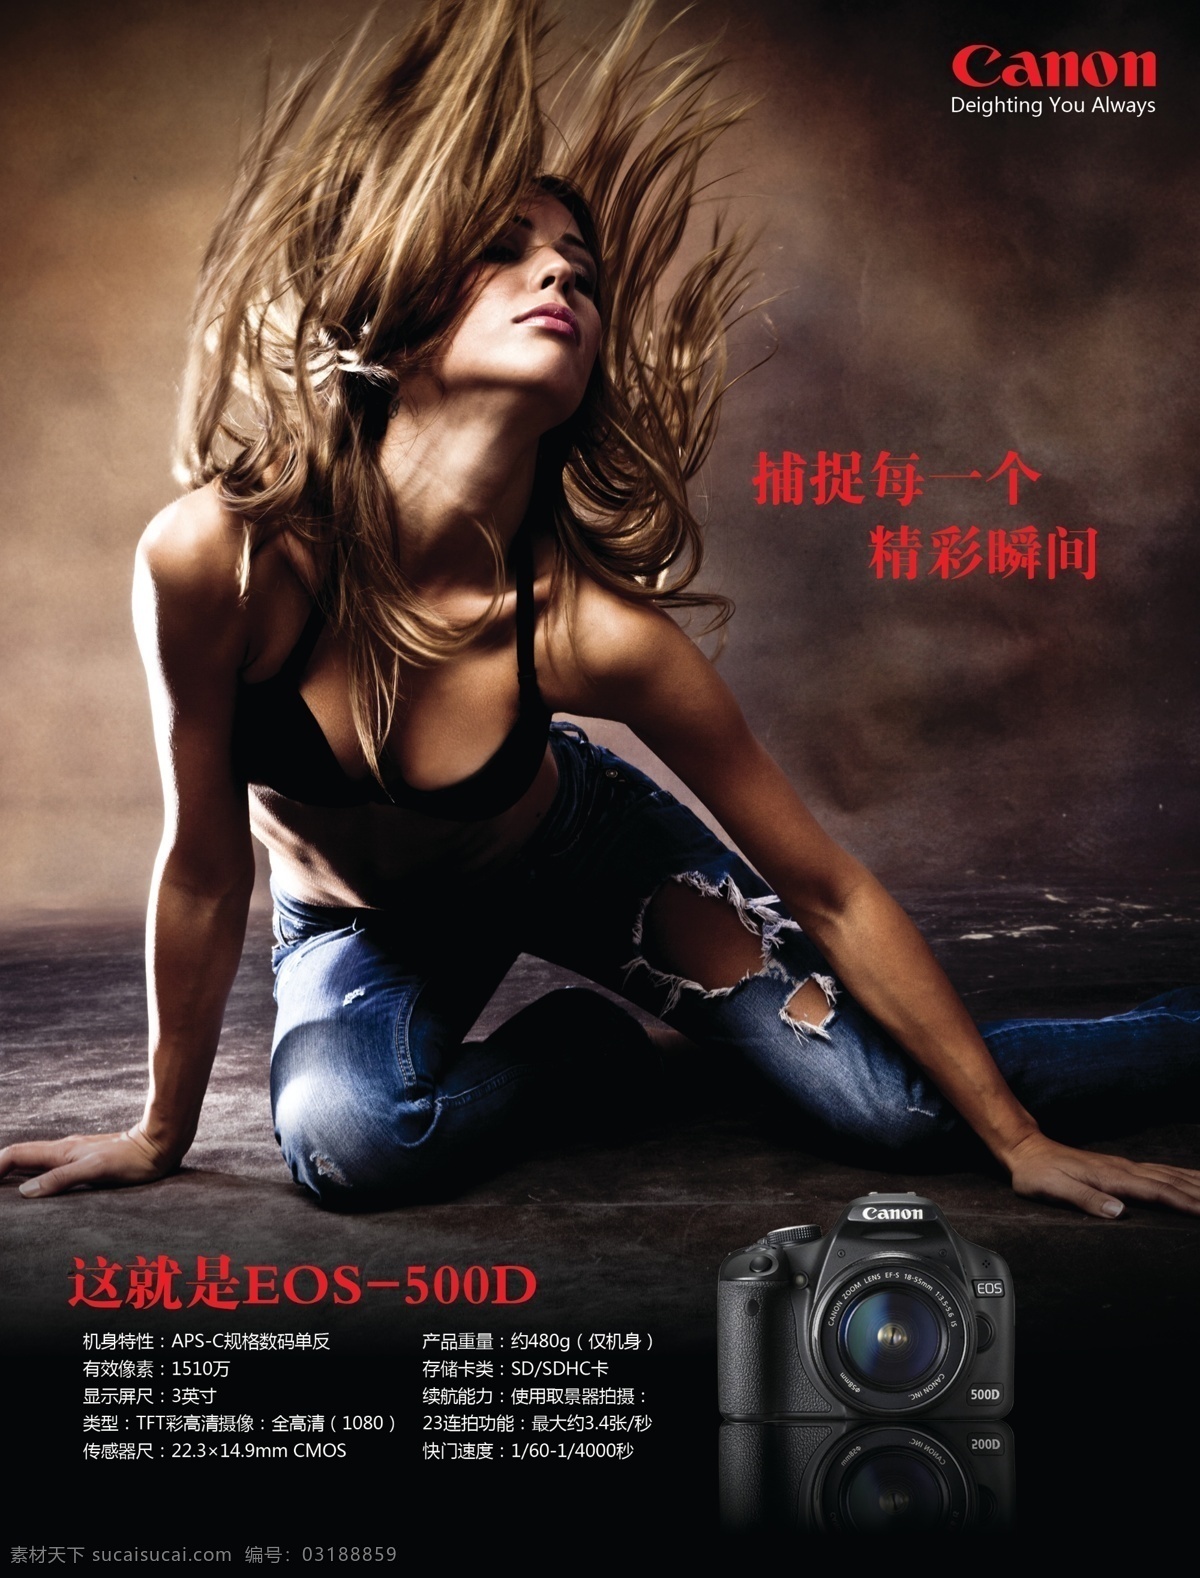 产品 单反 广告设计模板 国际化 佳能 科技海报 美女 海报 canon 相机 数码 时尚写真 源文件 其他海报设计